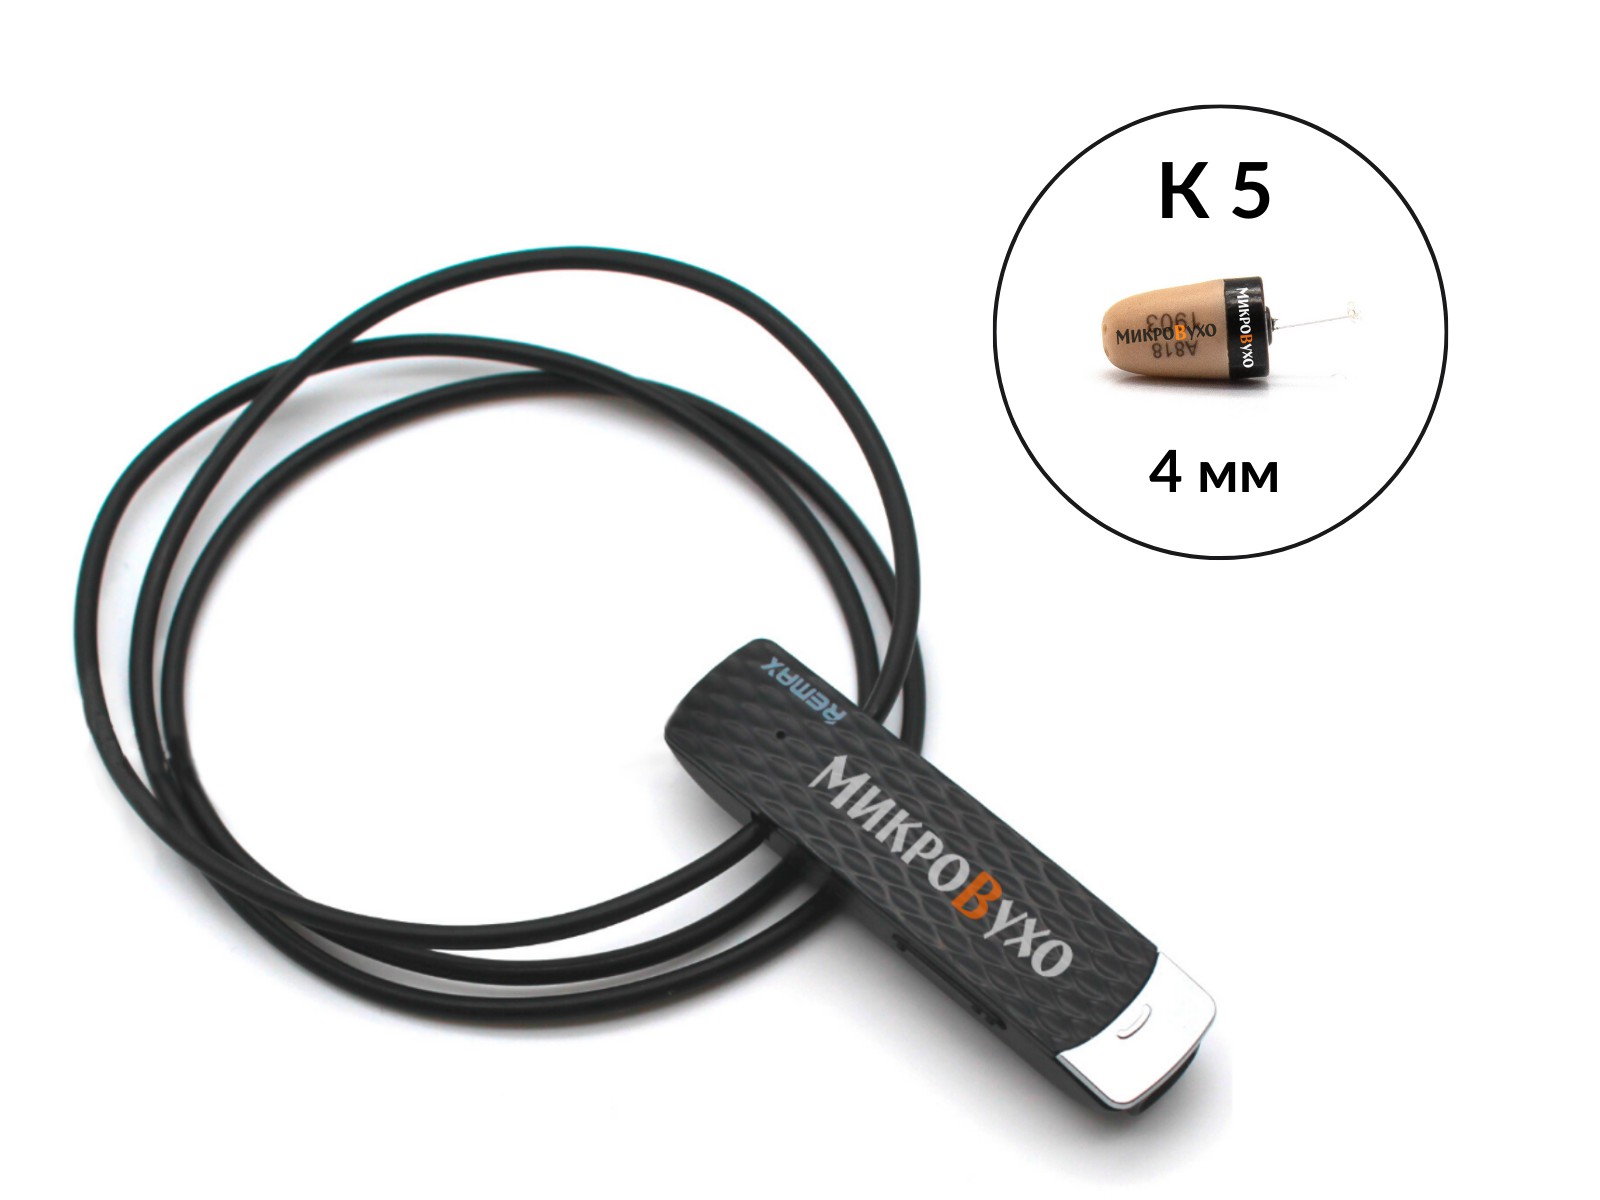 Гарнитура Bluetooth Remax с капсульным микронаушником K5 4 мм 1